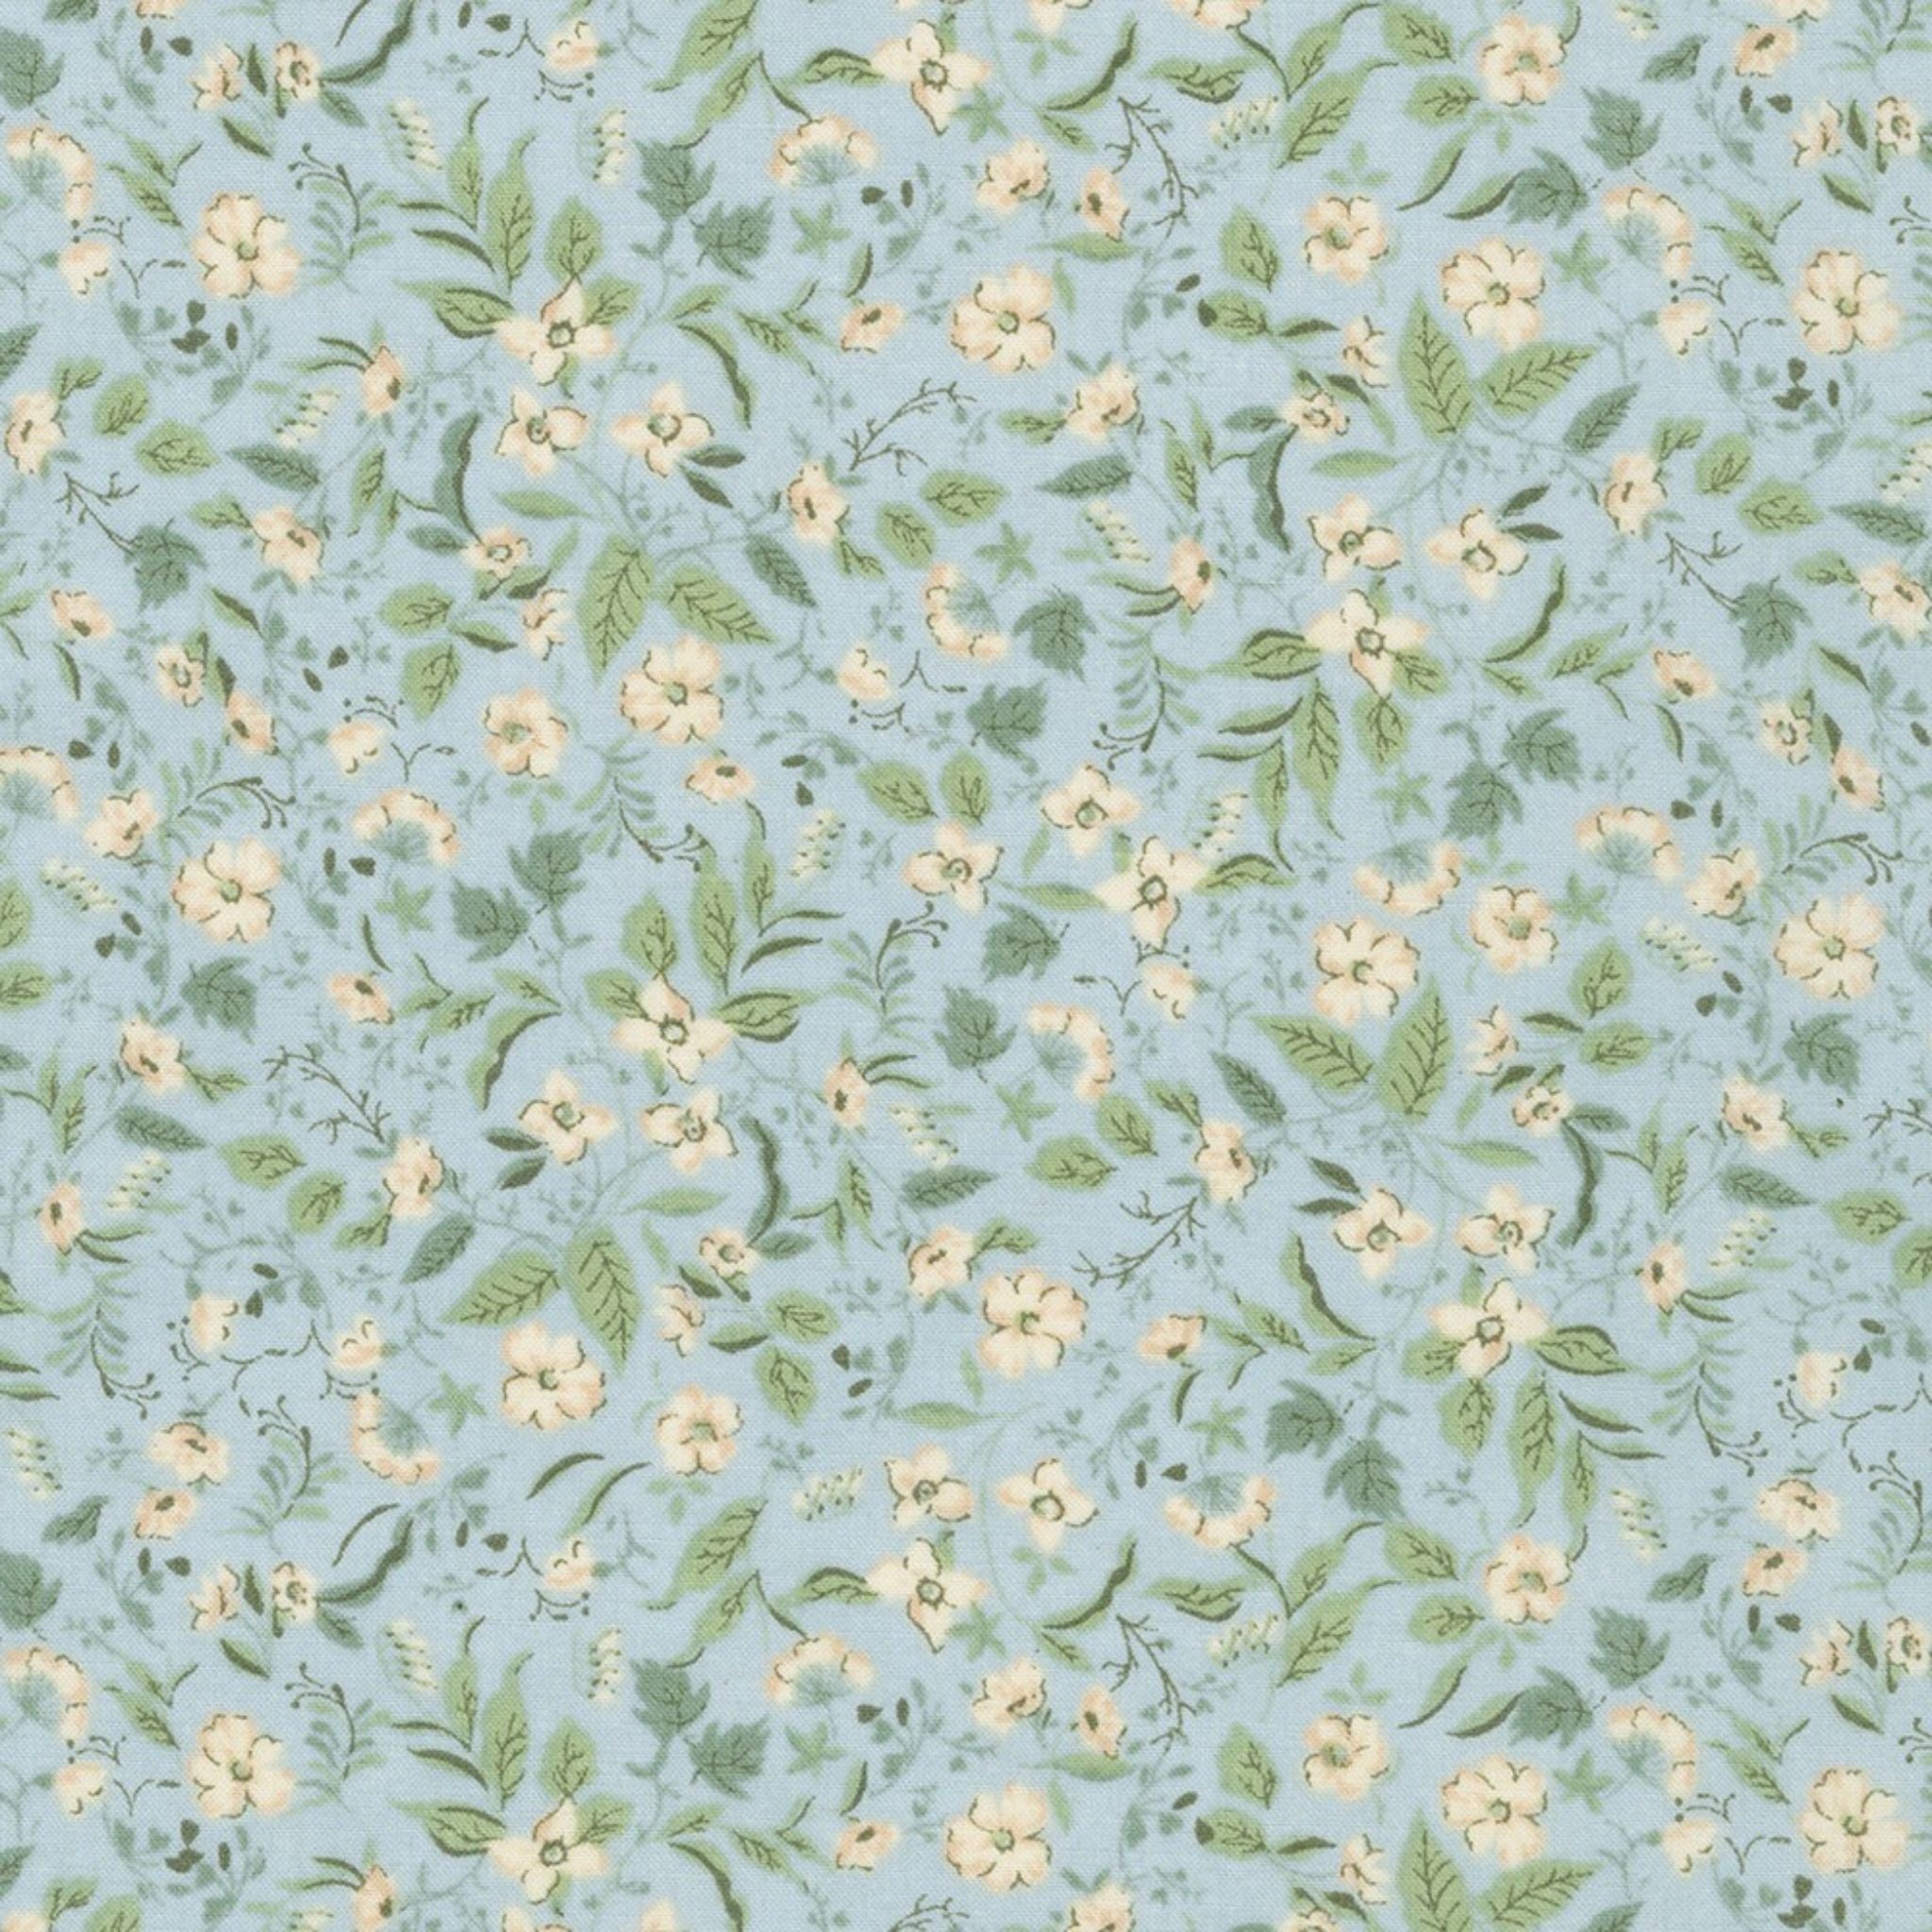 Misty blue cotton lawn - Sweet Flower by Sevenberry